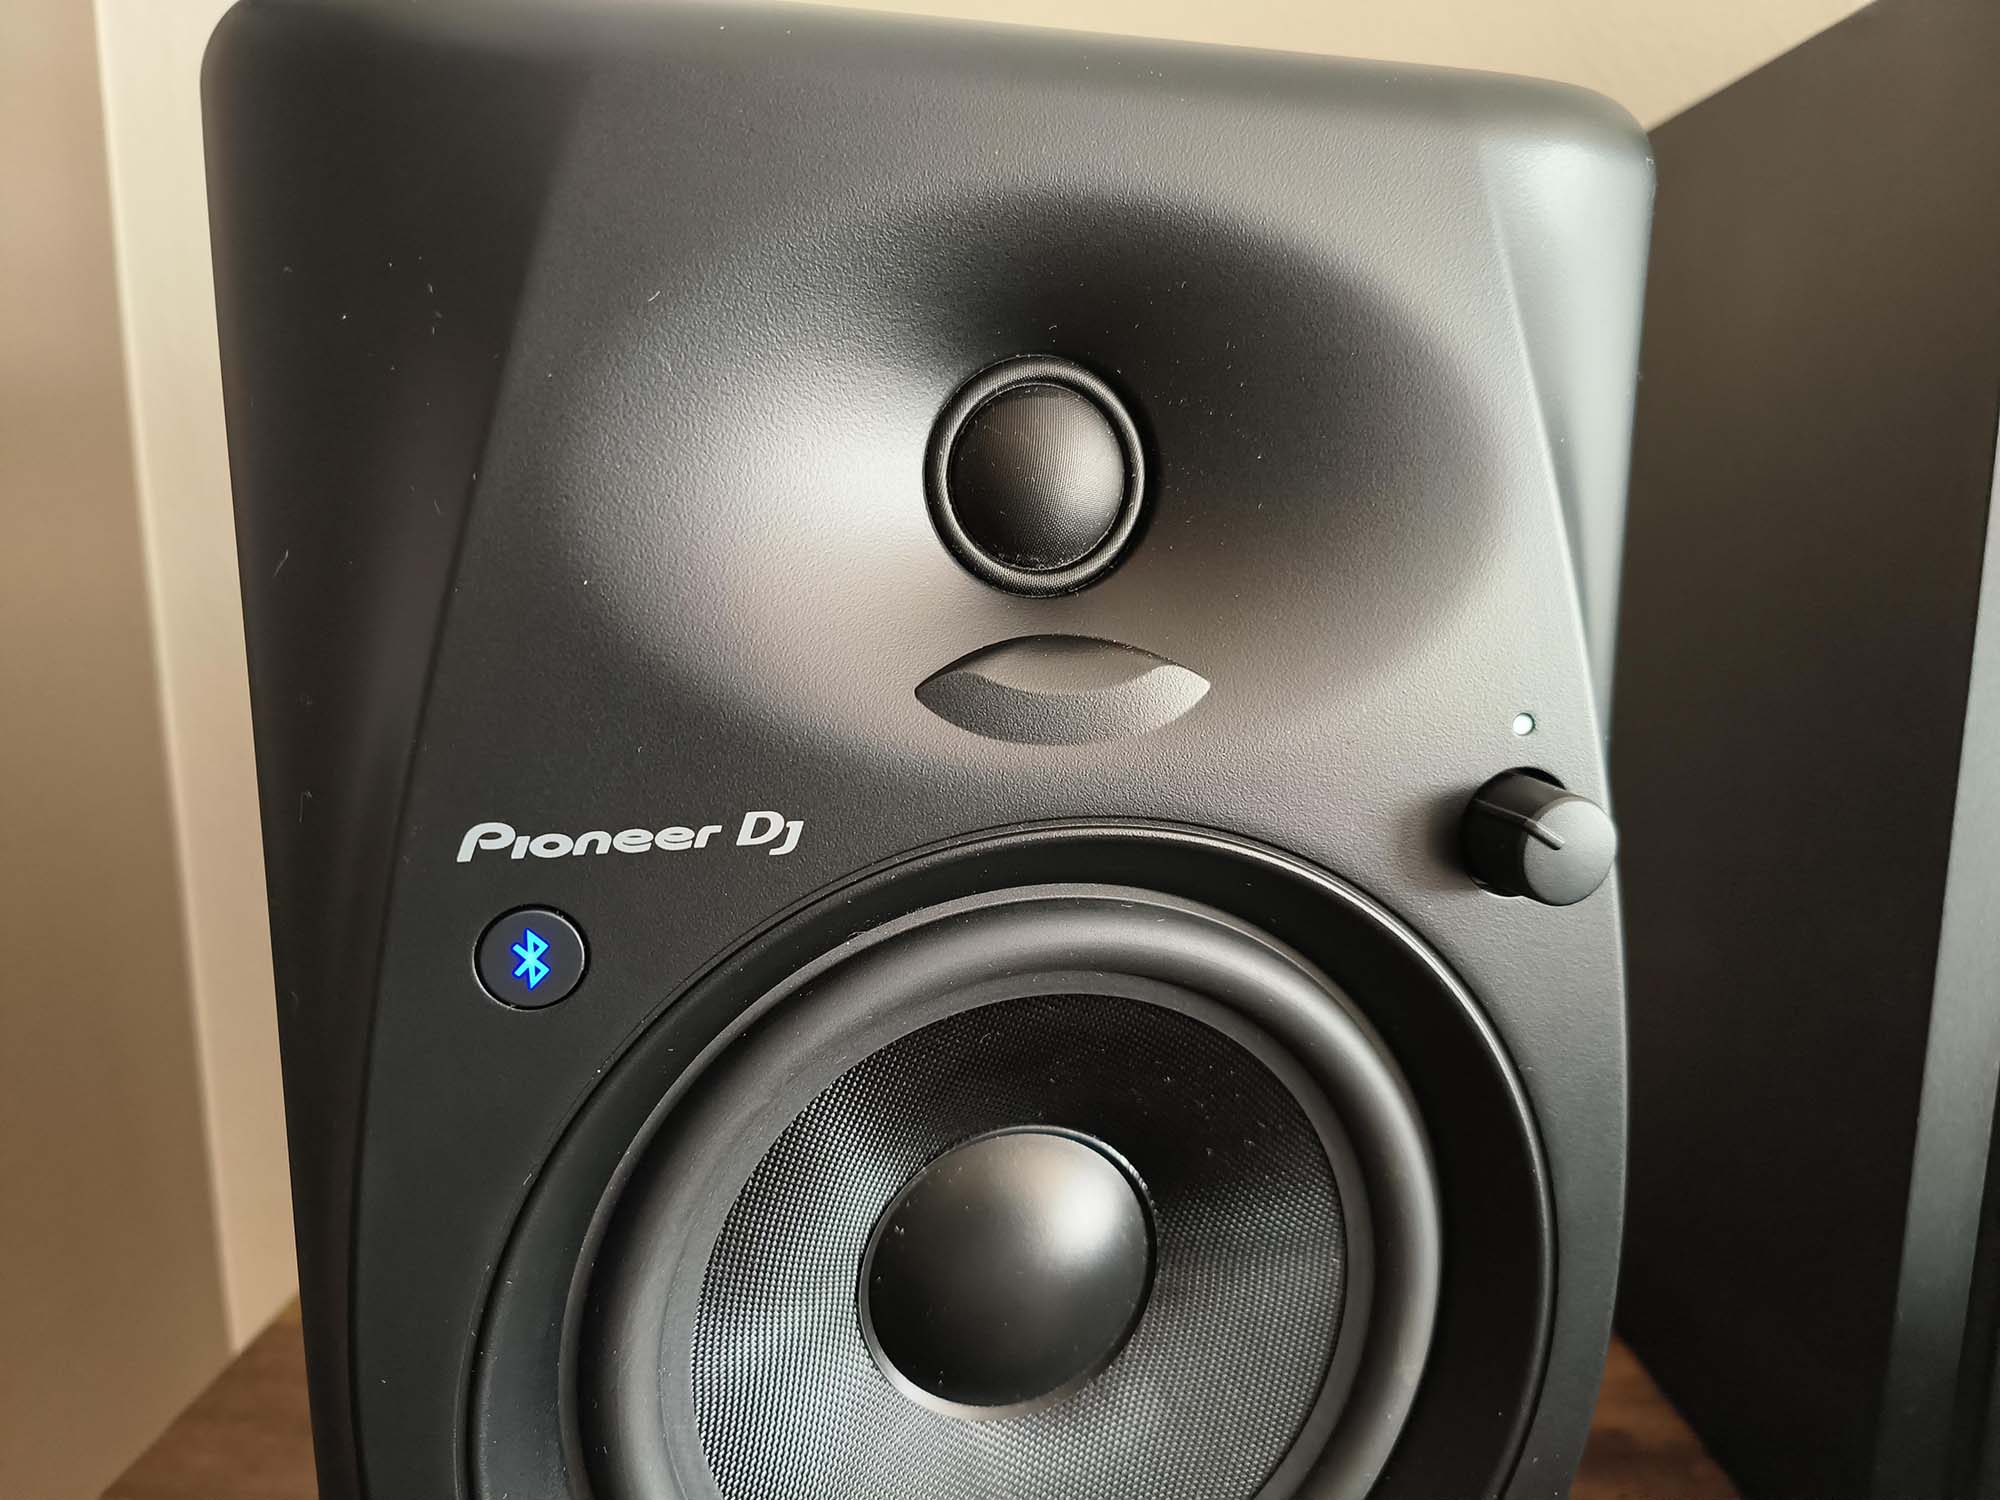 Pionner DJ DM-50D-BT